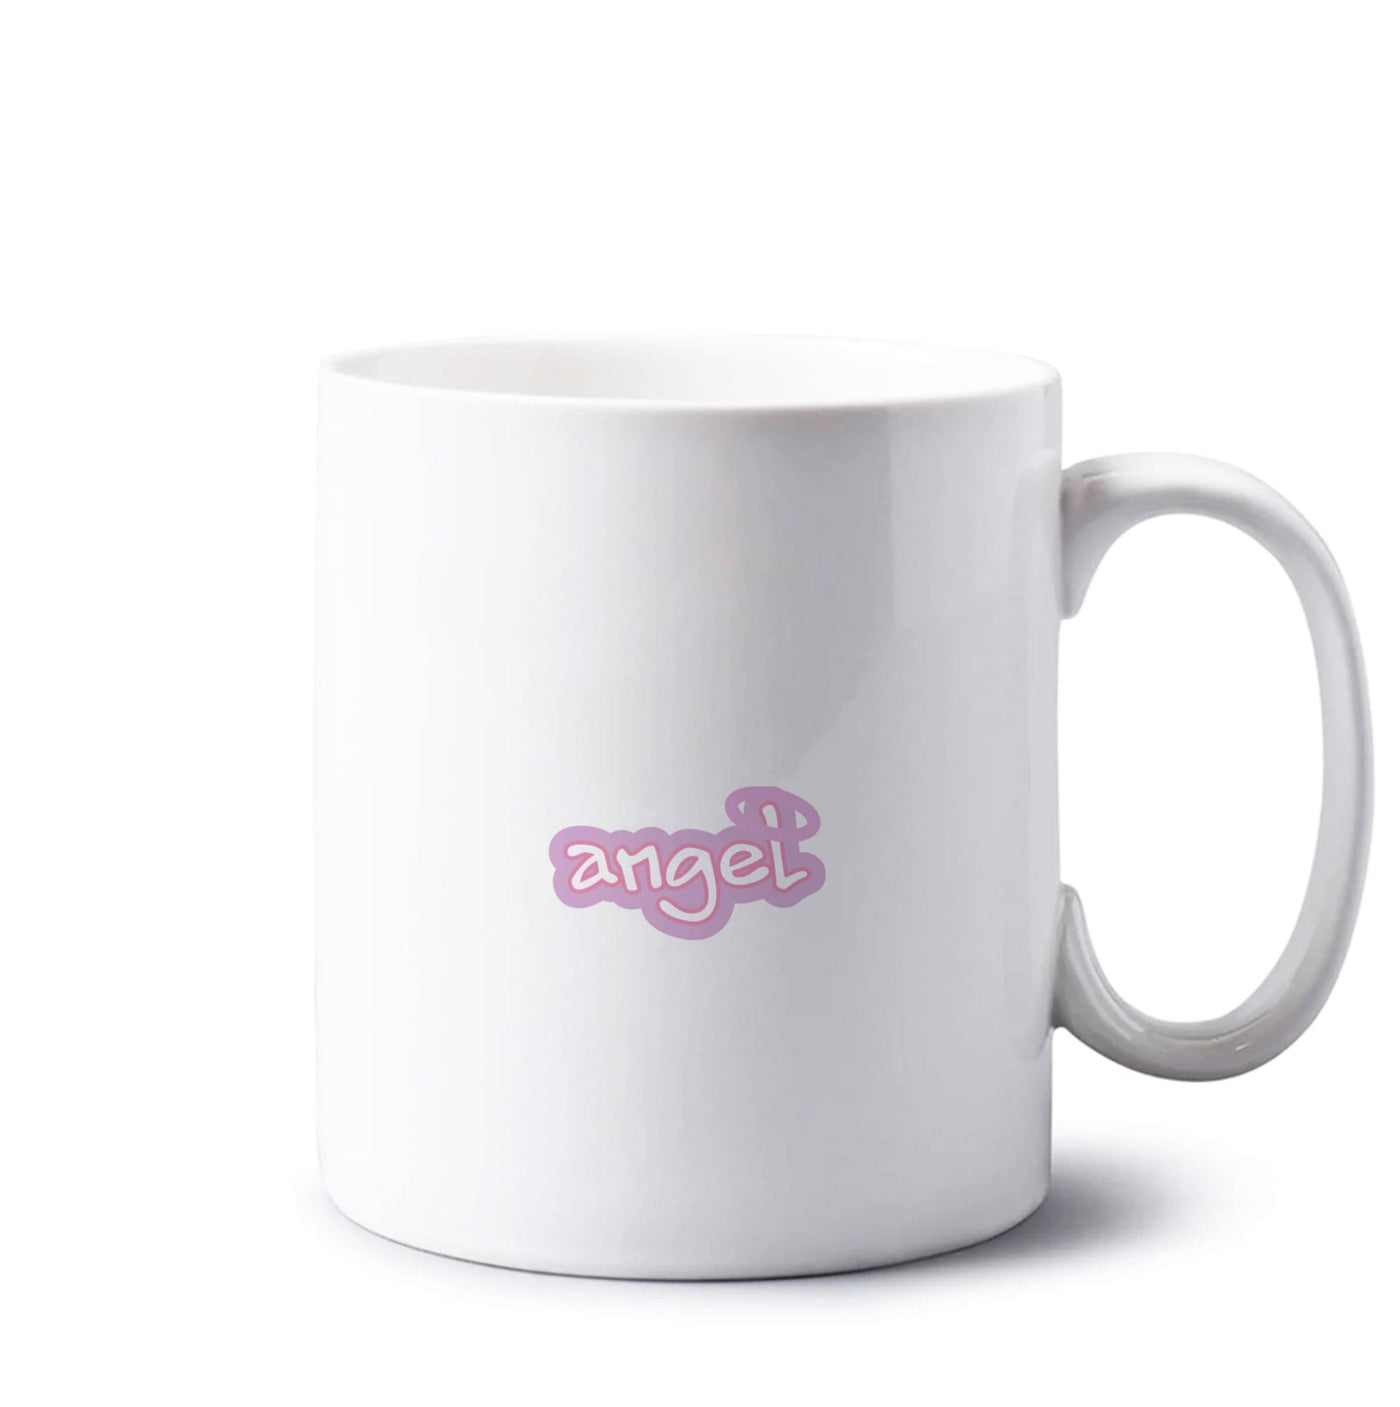 Angel - Loren Gray Mug